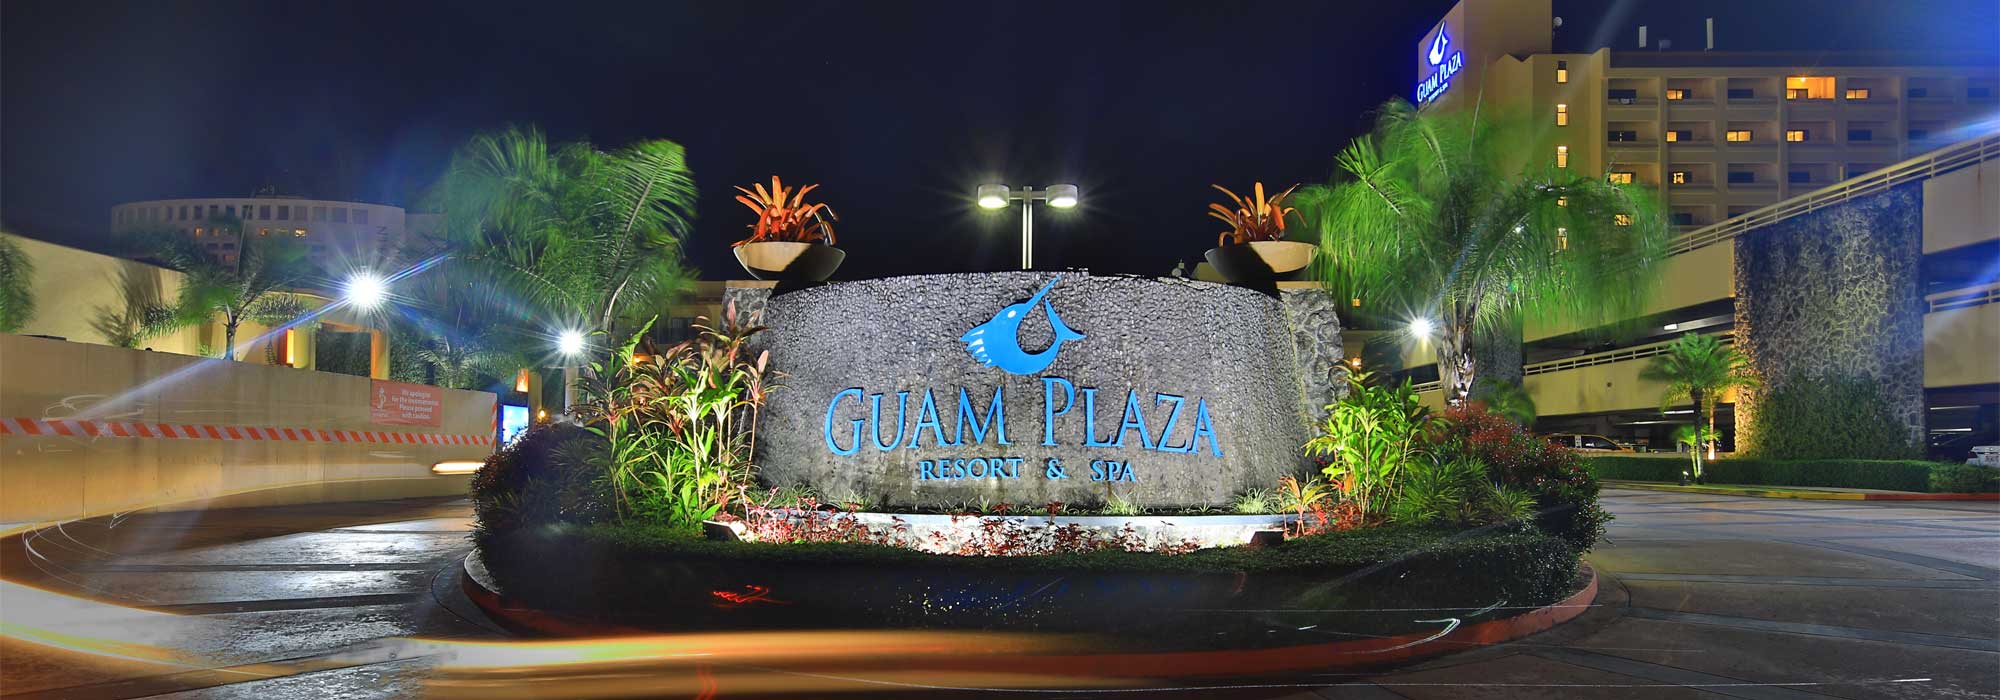 Guam Hotel